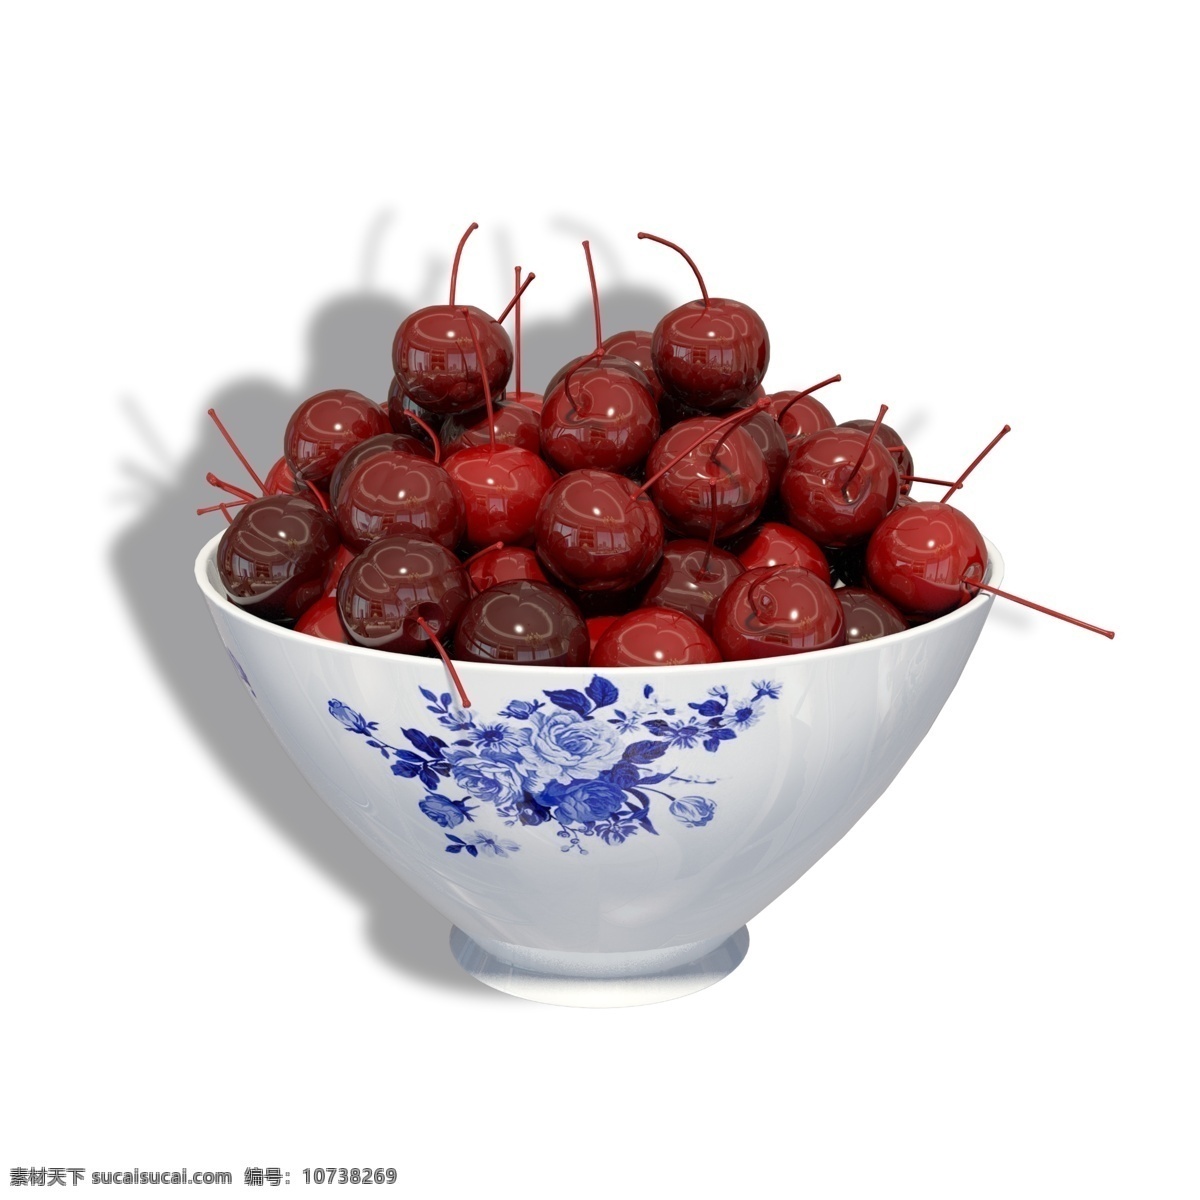 碗 熟透 车 厘 子 樱桃 一碗 熟透的 车厘子 果实 水果 营养 美味 酸甜 红色 红色的果实 青花瓷 中国瓷器 瓷碗